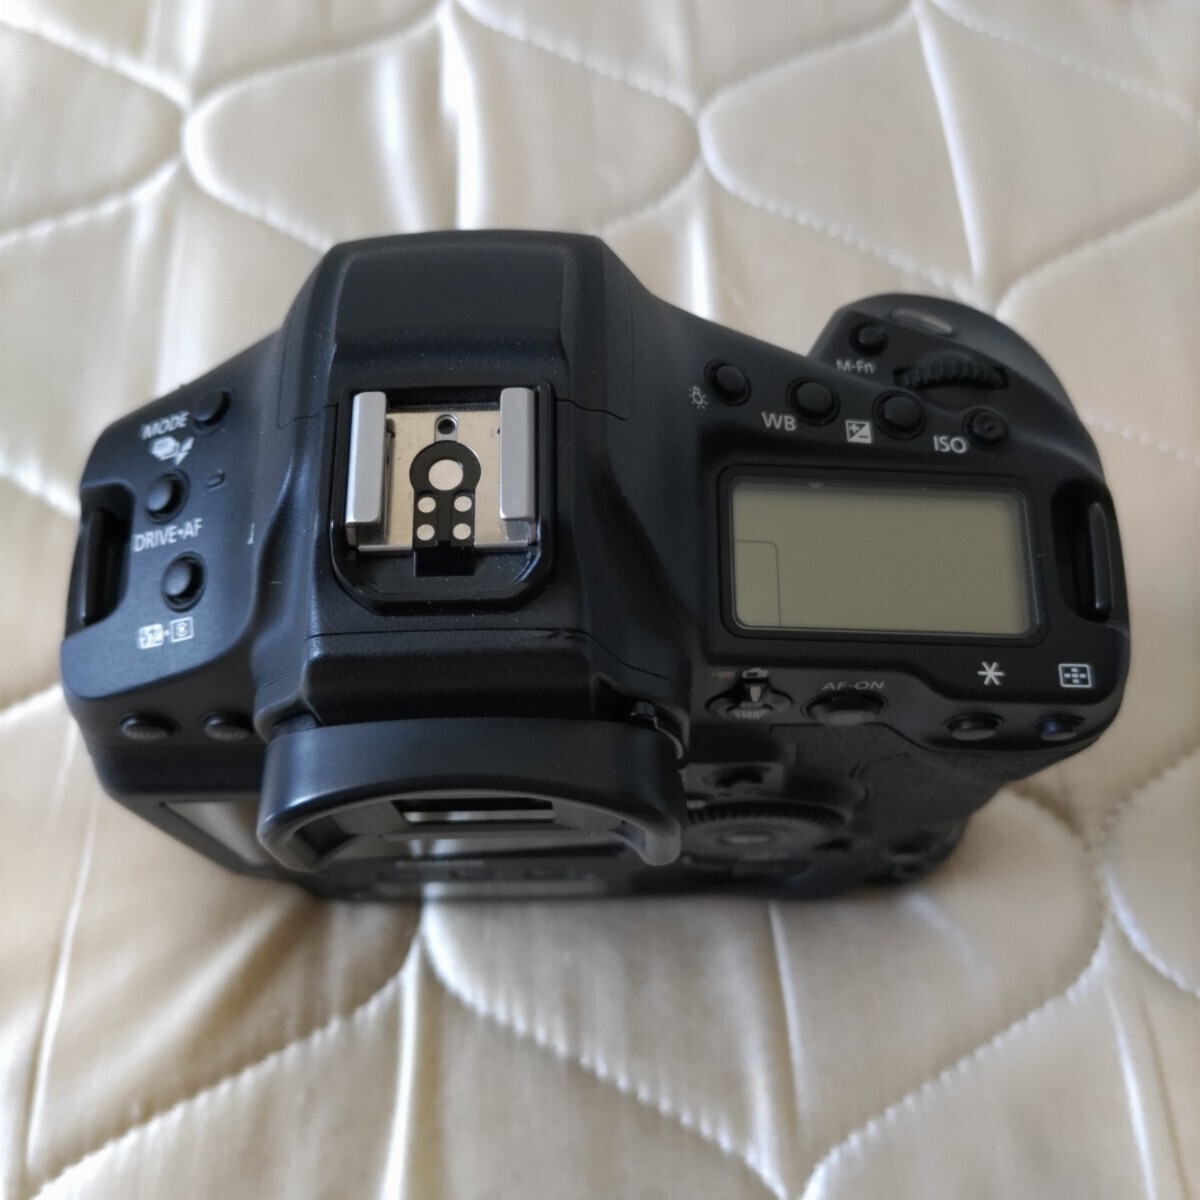  Canon EOS-1D X Mark III キヤノン 1DX Markⅲ シャッター回数45000以下 バッテリー2本付き(劣化無し)の画像2